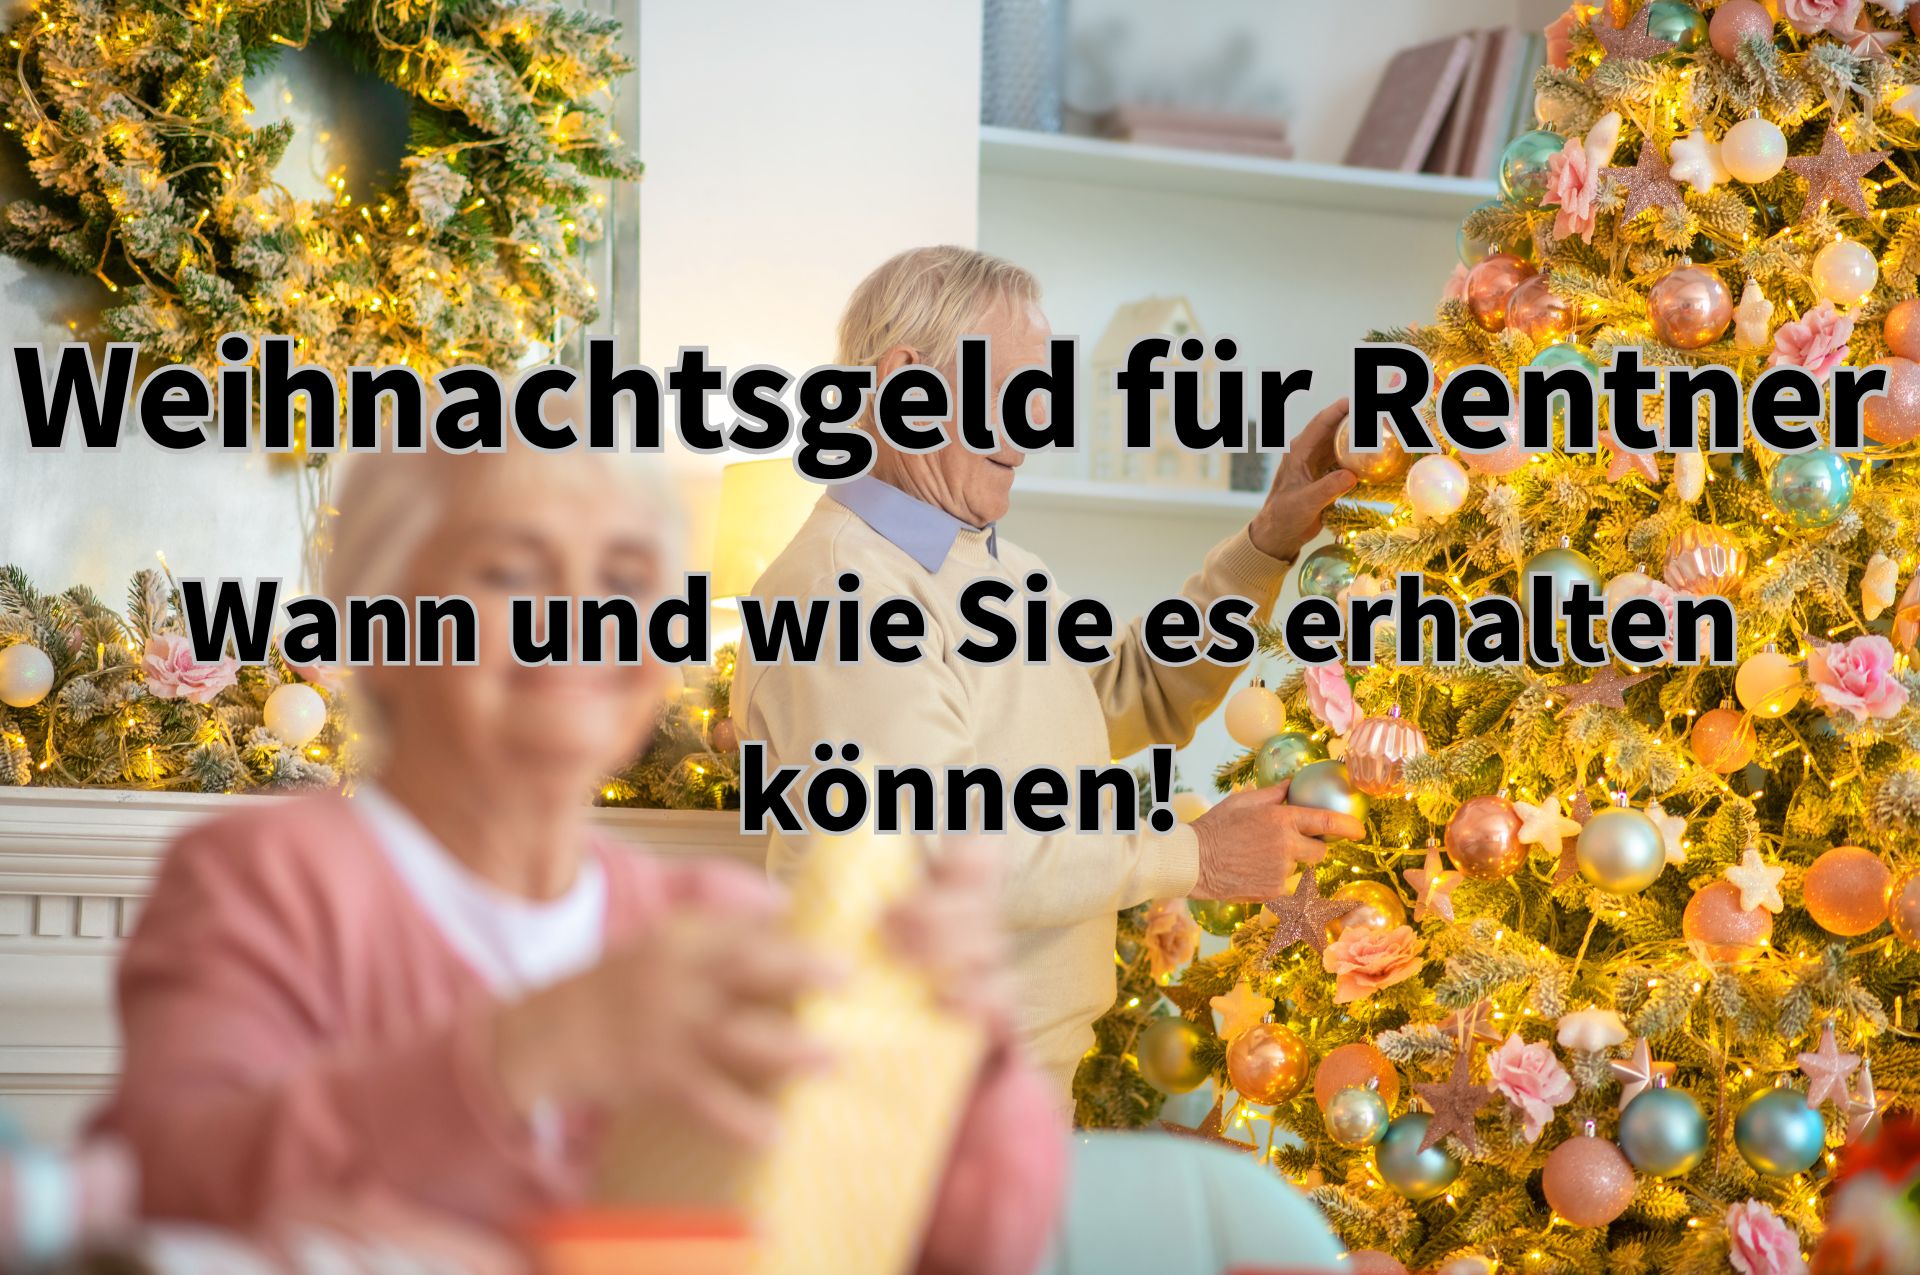 Weihnachtsgeld für Rentner – so erhalten Rentner die Weihnachtsbeihilfe!